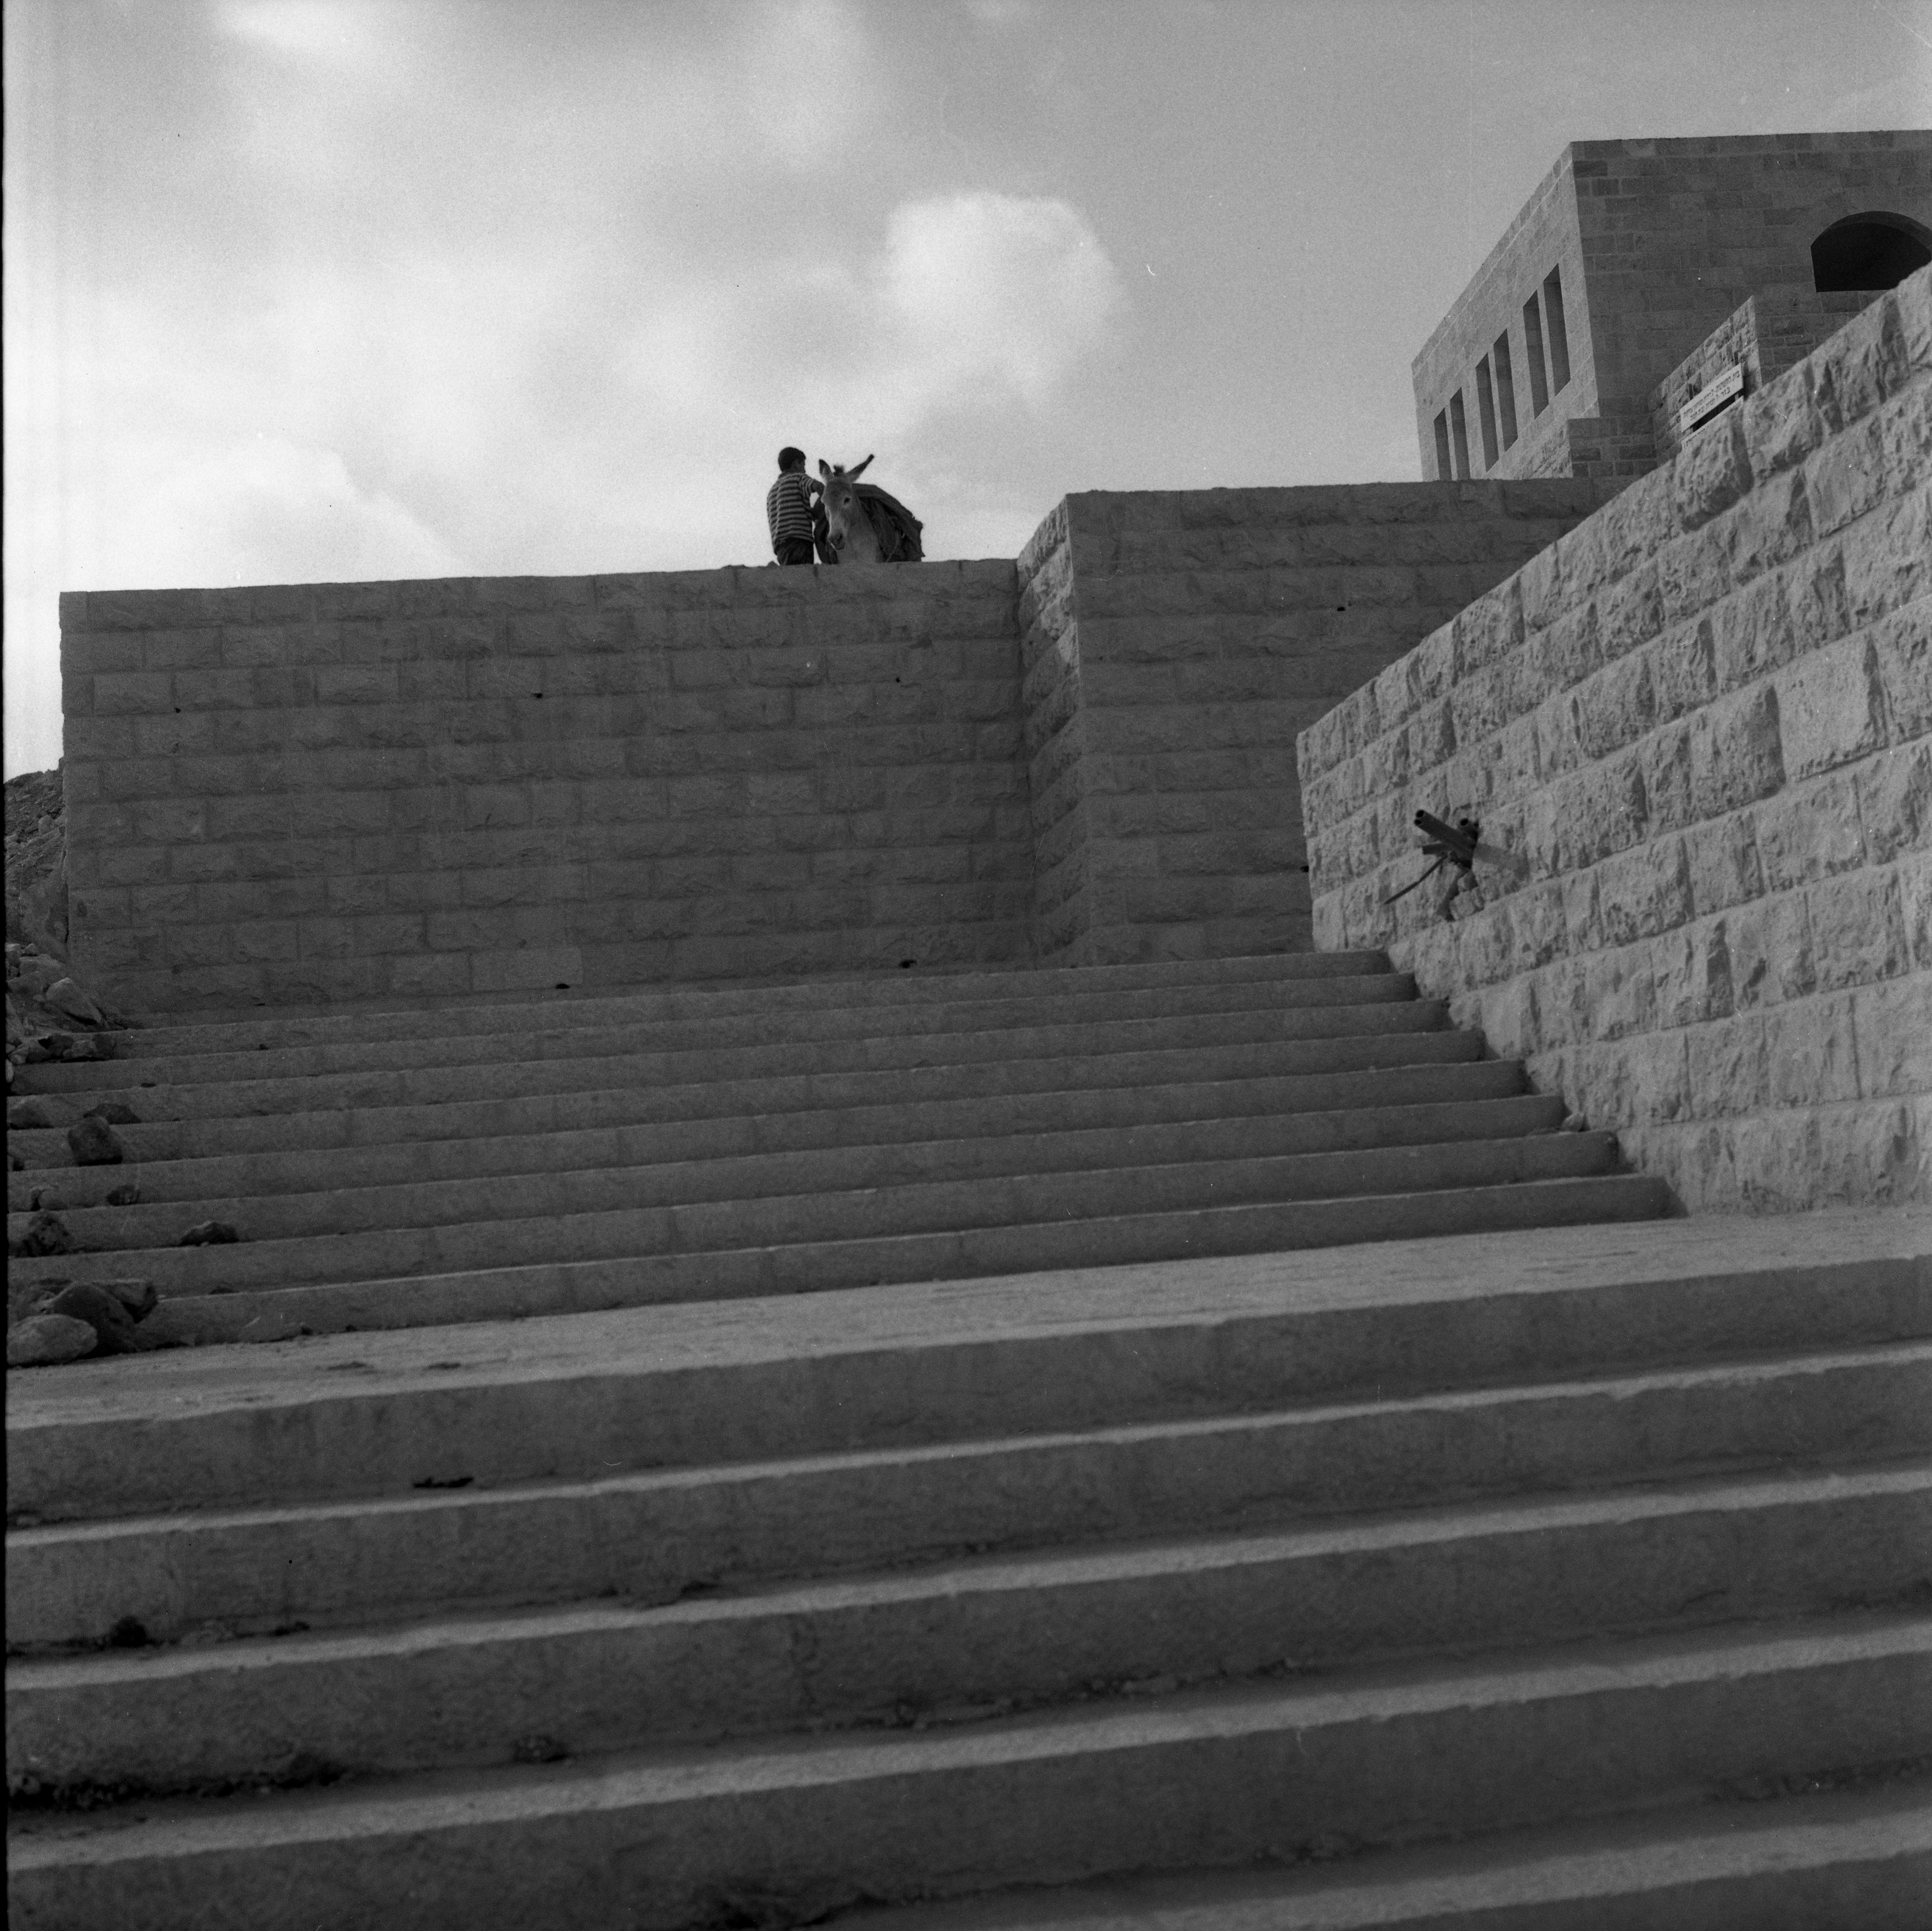  חופש בירושלים, נובמבר; 1971